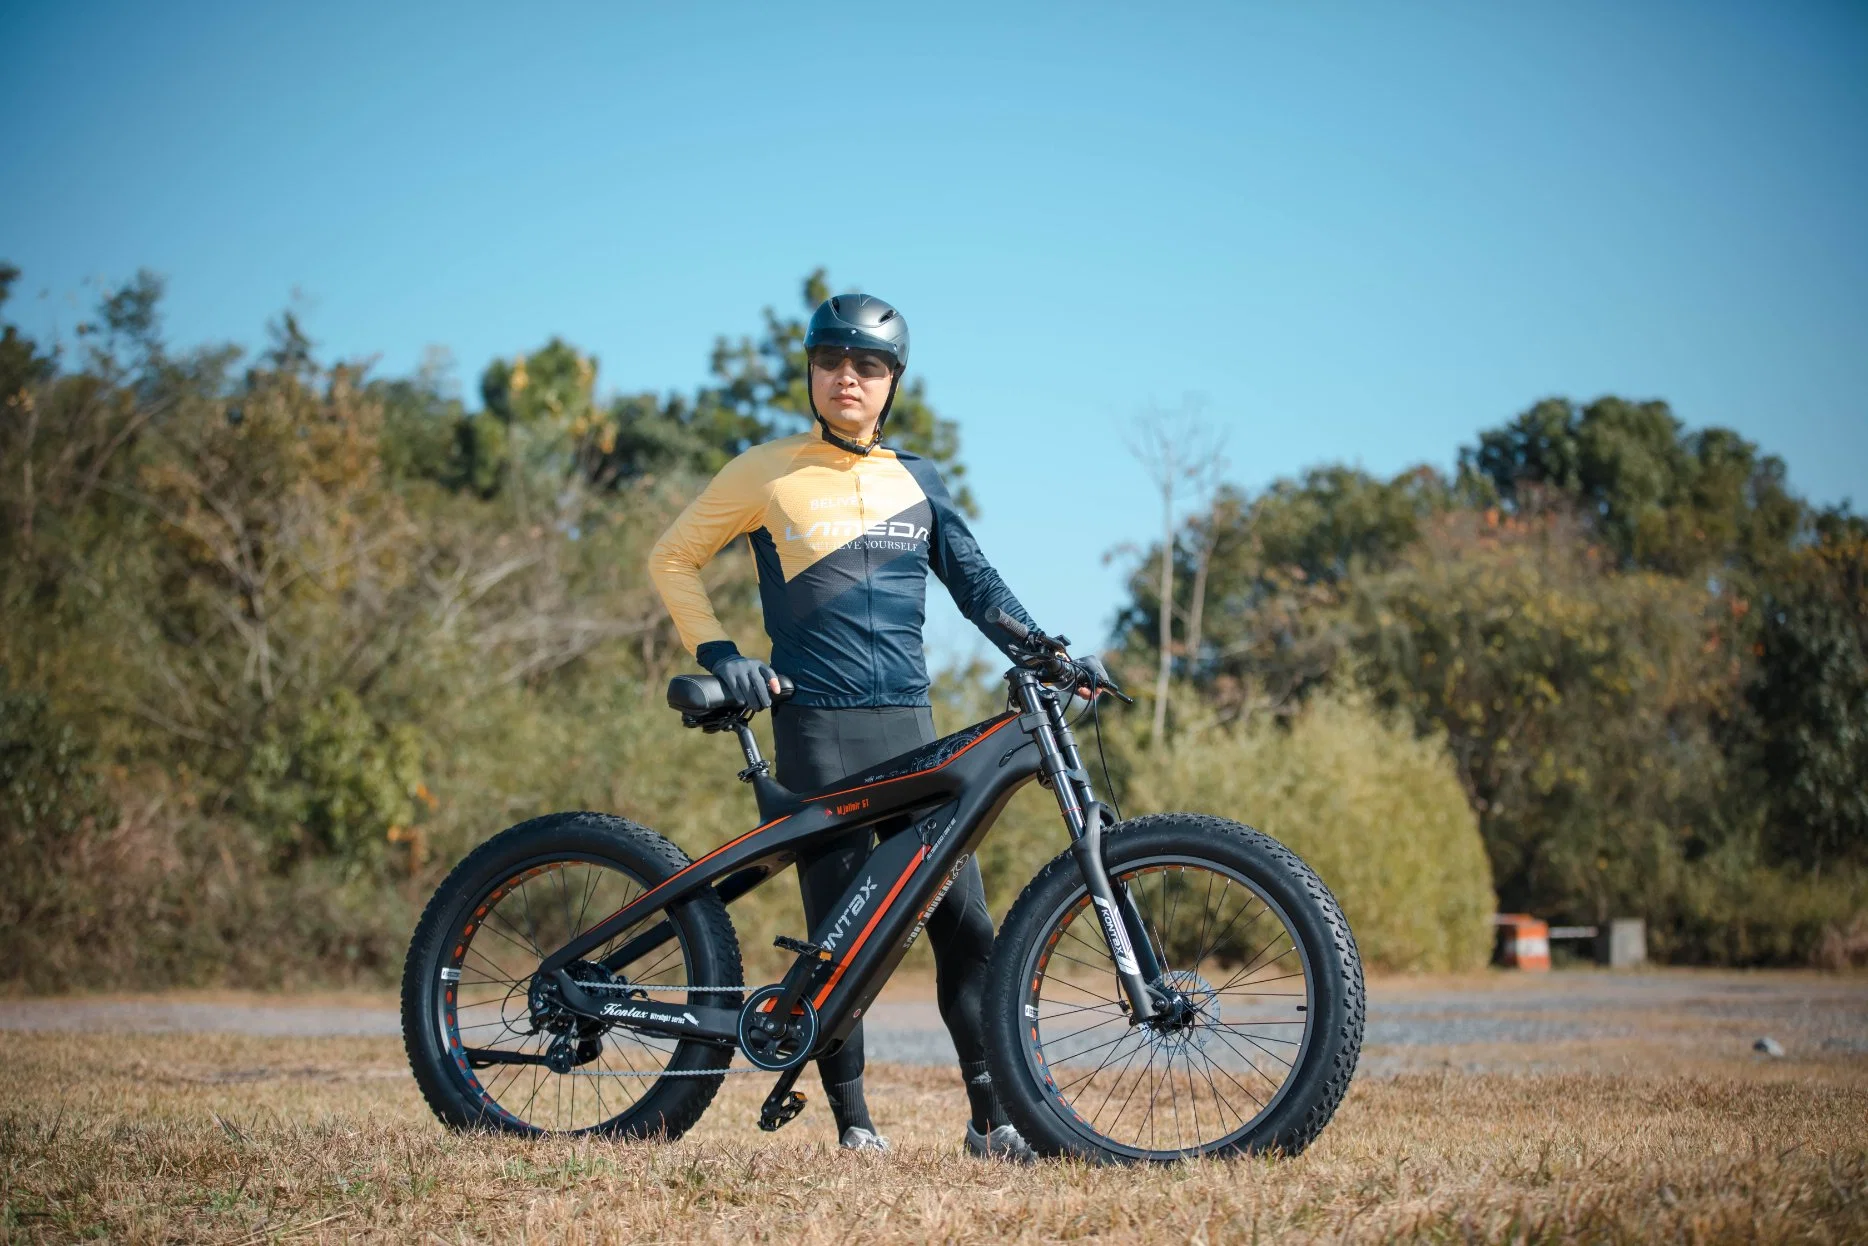 الدرّاجة الدهن الدهن الدهن الدهن الحوينة ألياف الكربون الإطار الدراجة الهوائية 1000 واط شركة كهربائية للدراجات الهوائية تبيع الدرّاجات فات الصبي